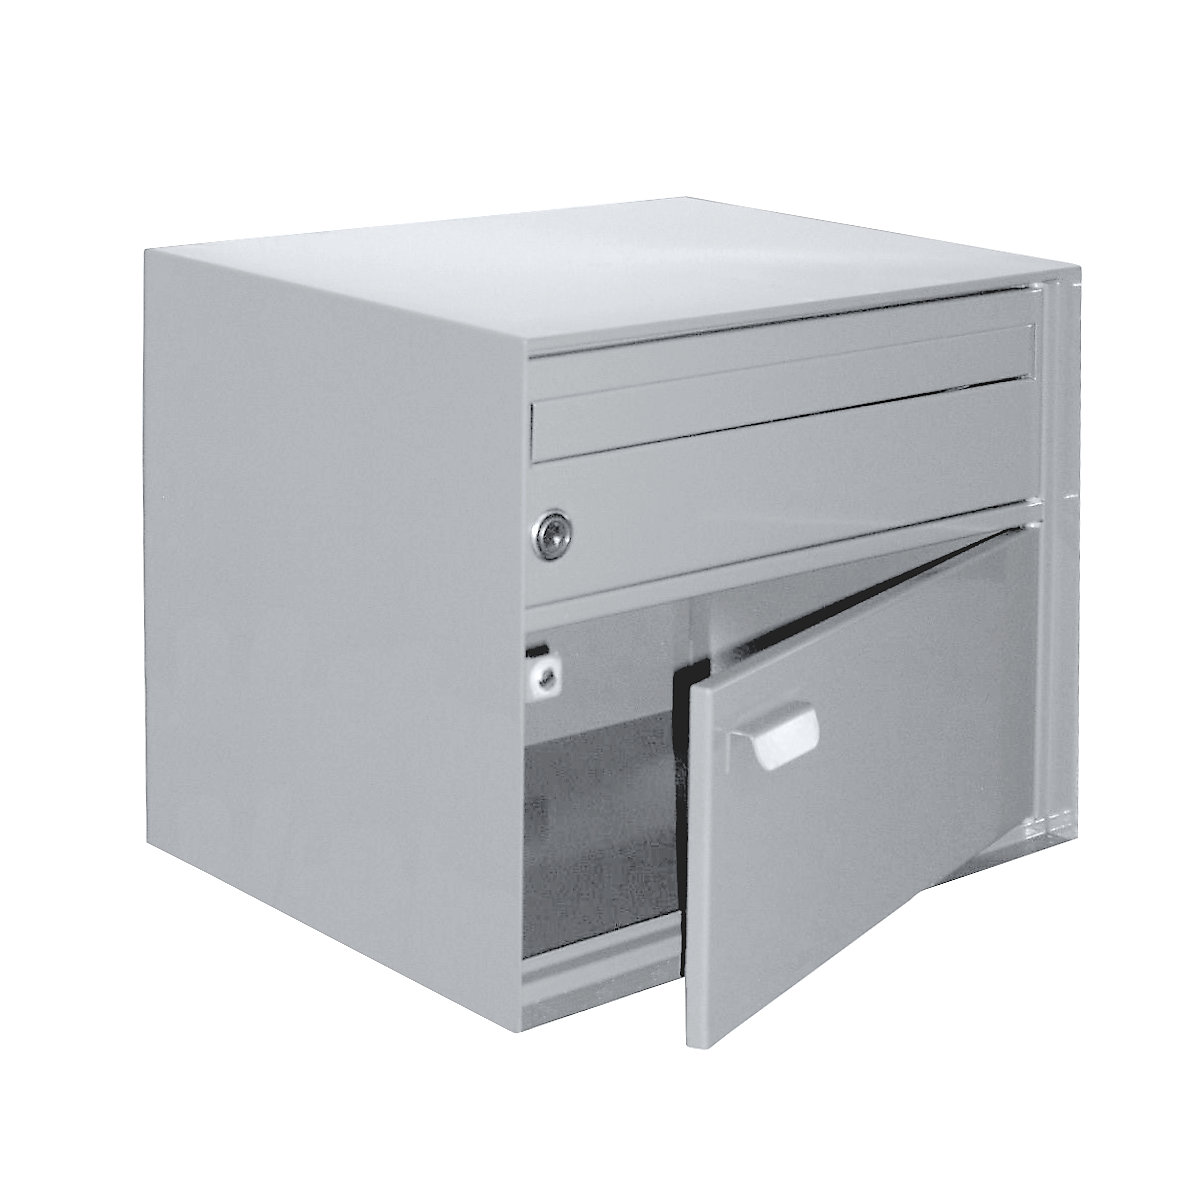 Briefkasten, BxHxT 390 x 315 x 310 mm, Stahlblech, pulverbeschichtet, weiß-4